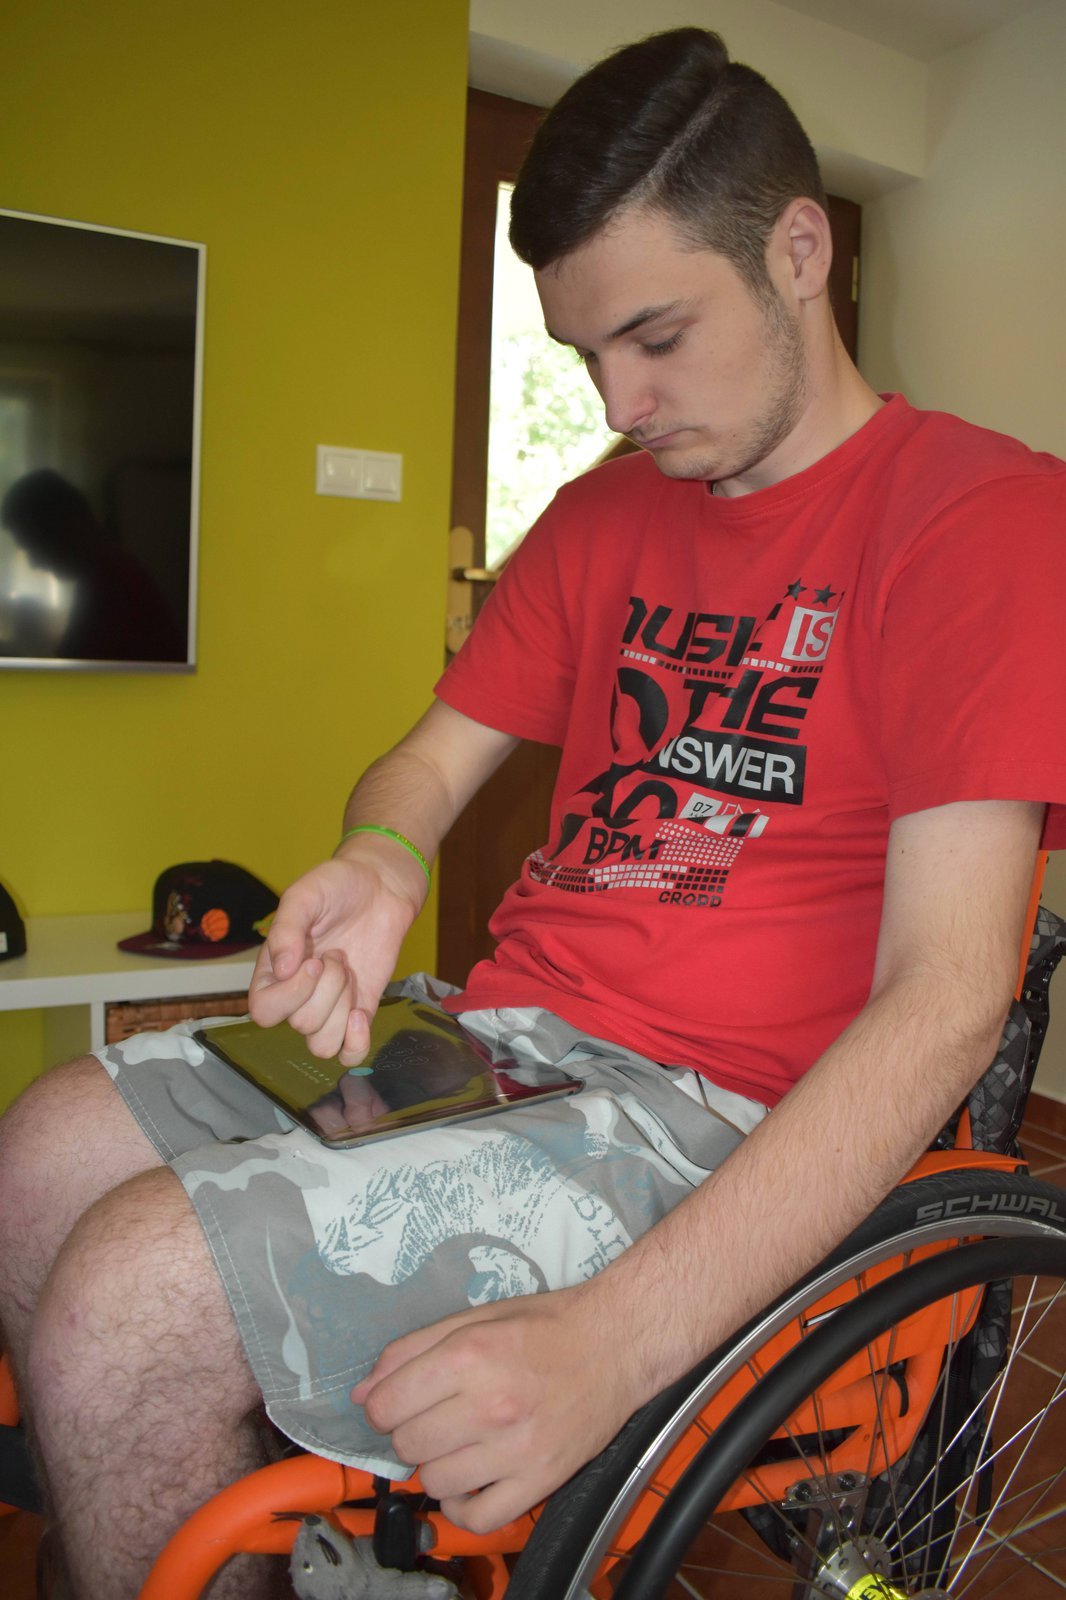 Přestože Ondra neovládá prsty, dokáže díky usilovnému cvičení jet na mechanickém vozíku. Nerovnosti ale nedokáže překonat.